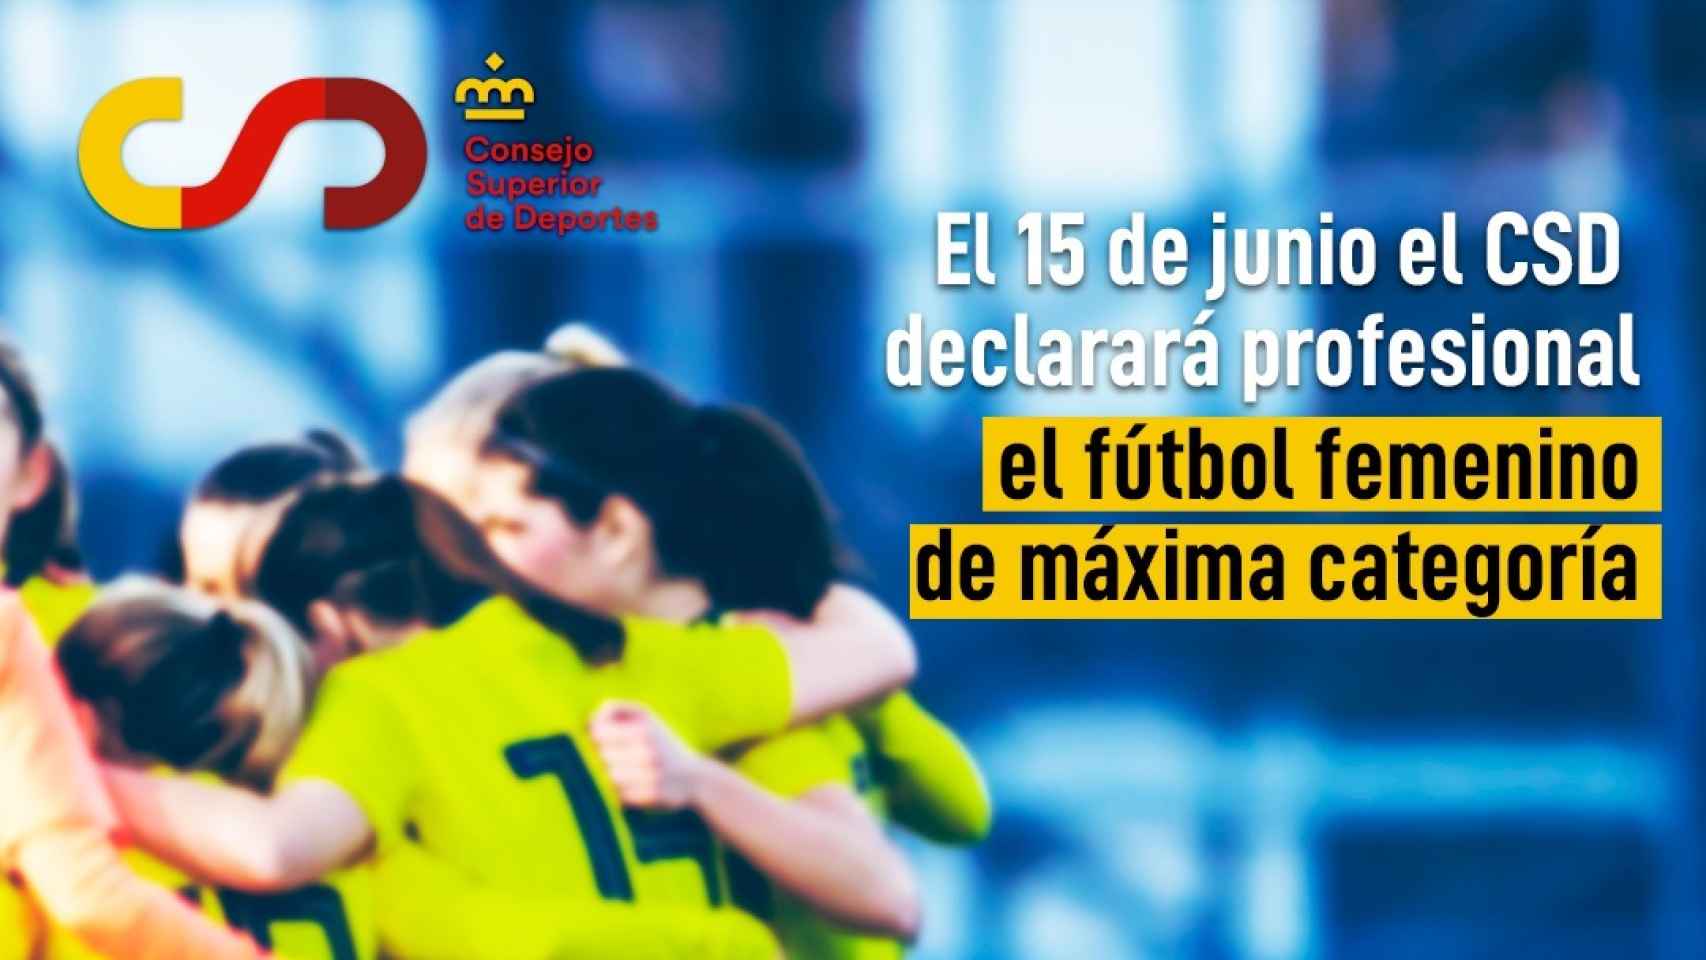 El CSD anuncia que el fútbol femenino será profesional